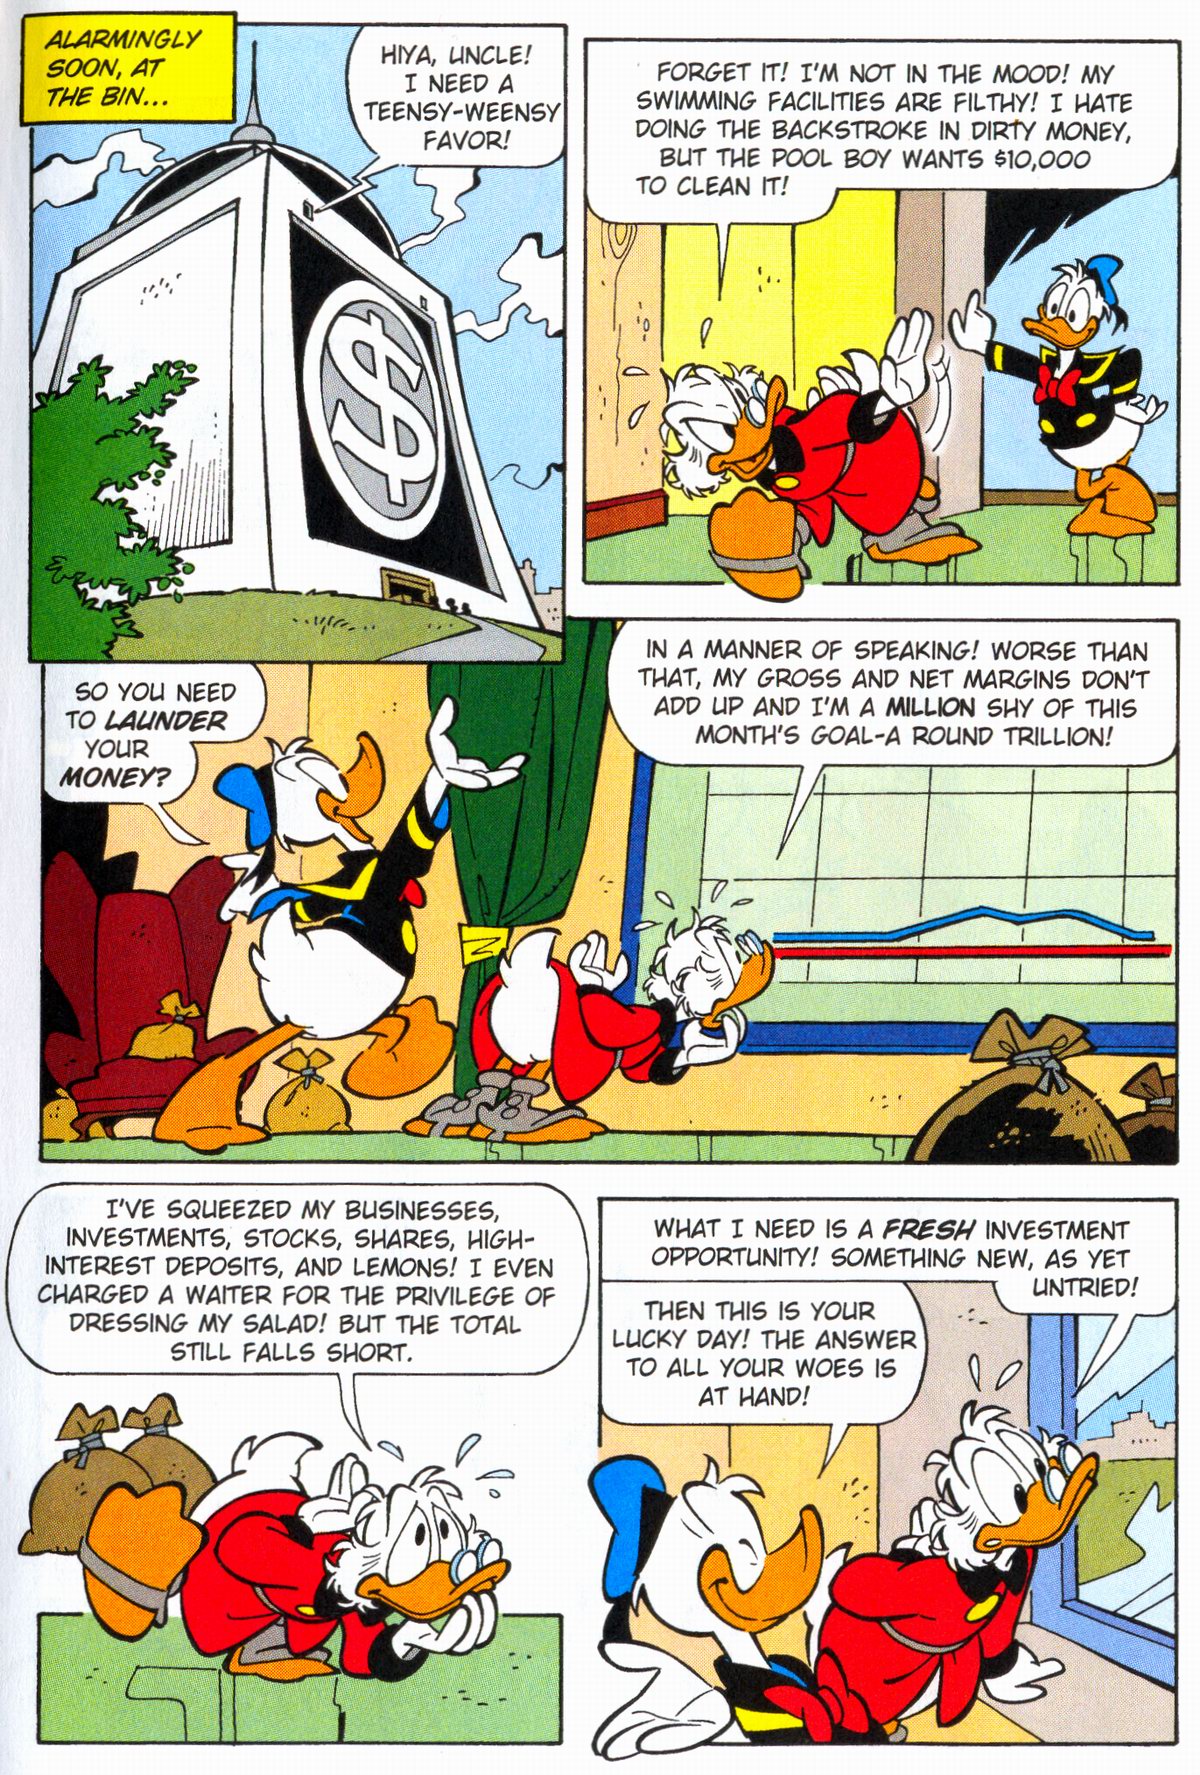 Read Online Walt Disney S Donald Duck Adventures 2003 Comic Issue 4